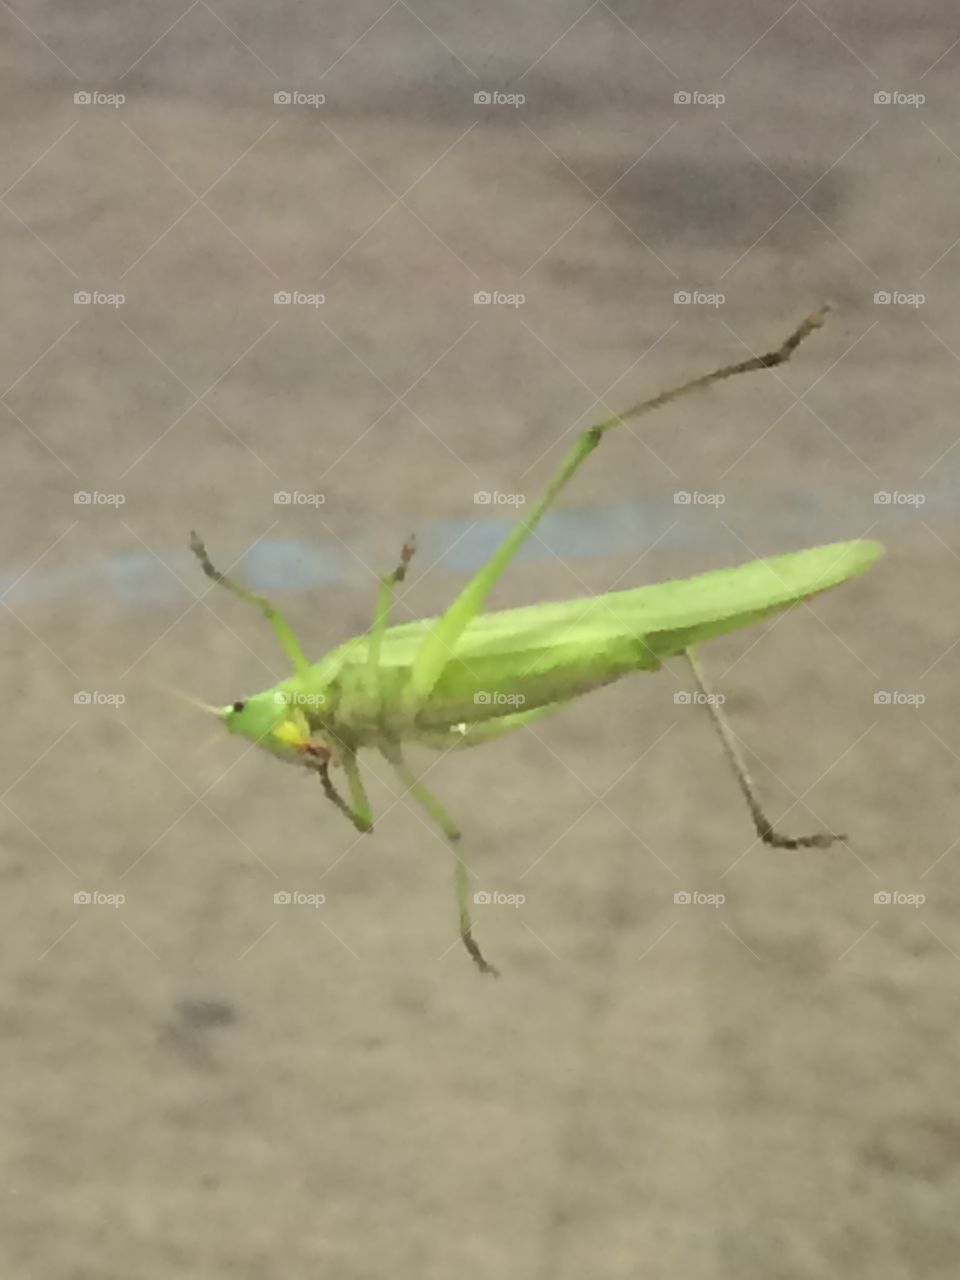 Grasshopper 